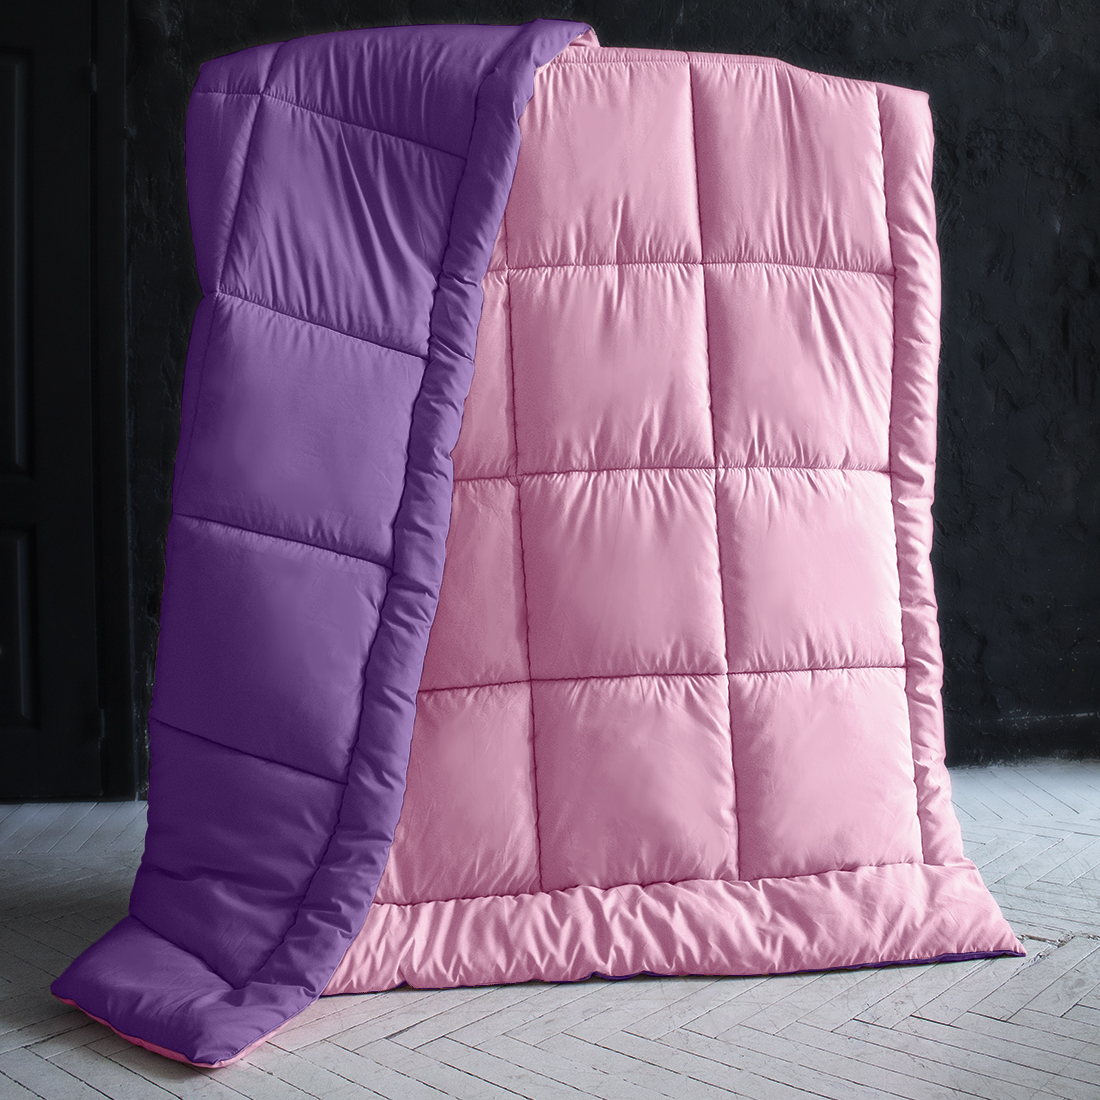 Одеяло MultiColor цвет: сиреневый, темно-фиолетовый (175х205 см), размер 175х205 см pva410851 Одеяло MultiColor цвет: сиреневый, темно-фиолетовый (175х205 см) - фото 1